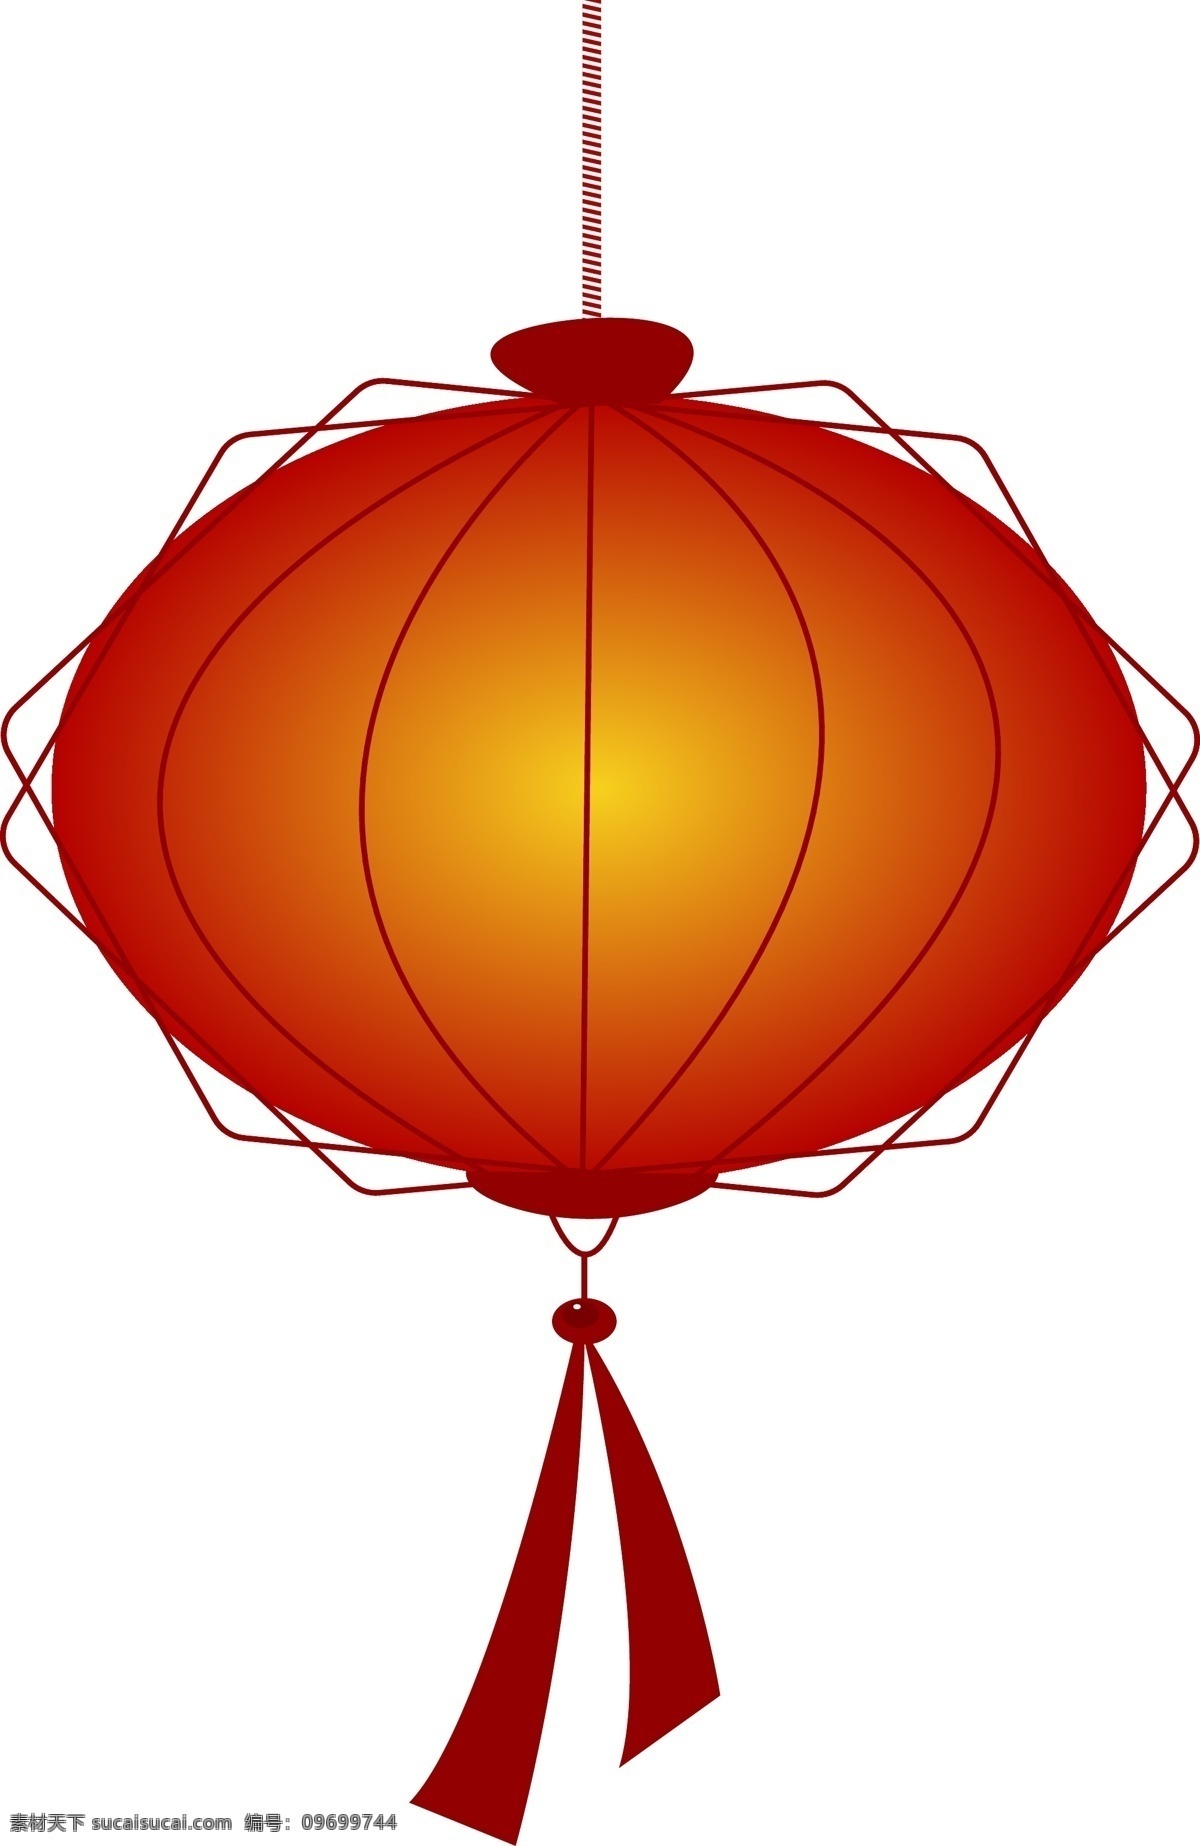 春节 元素 大红 灯笼 圆形 喜庆 新年 红色 传统